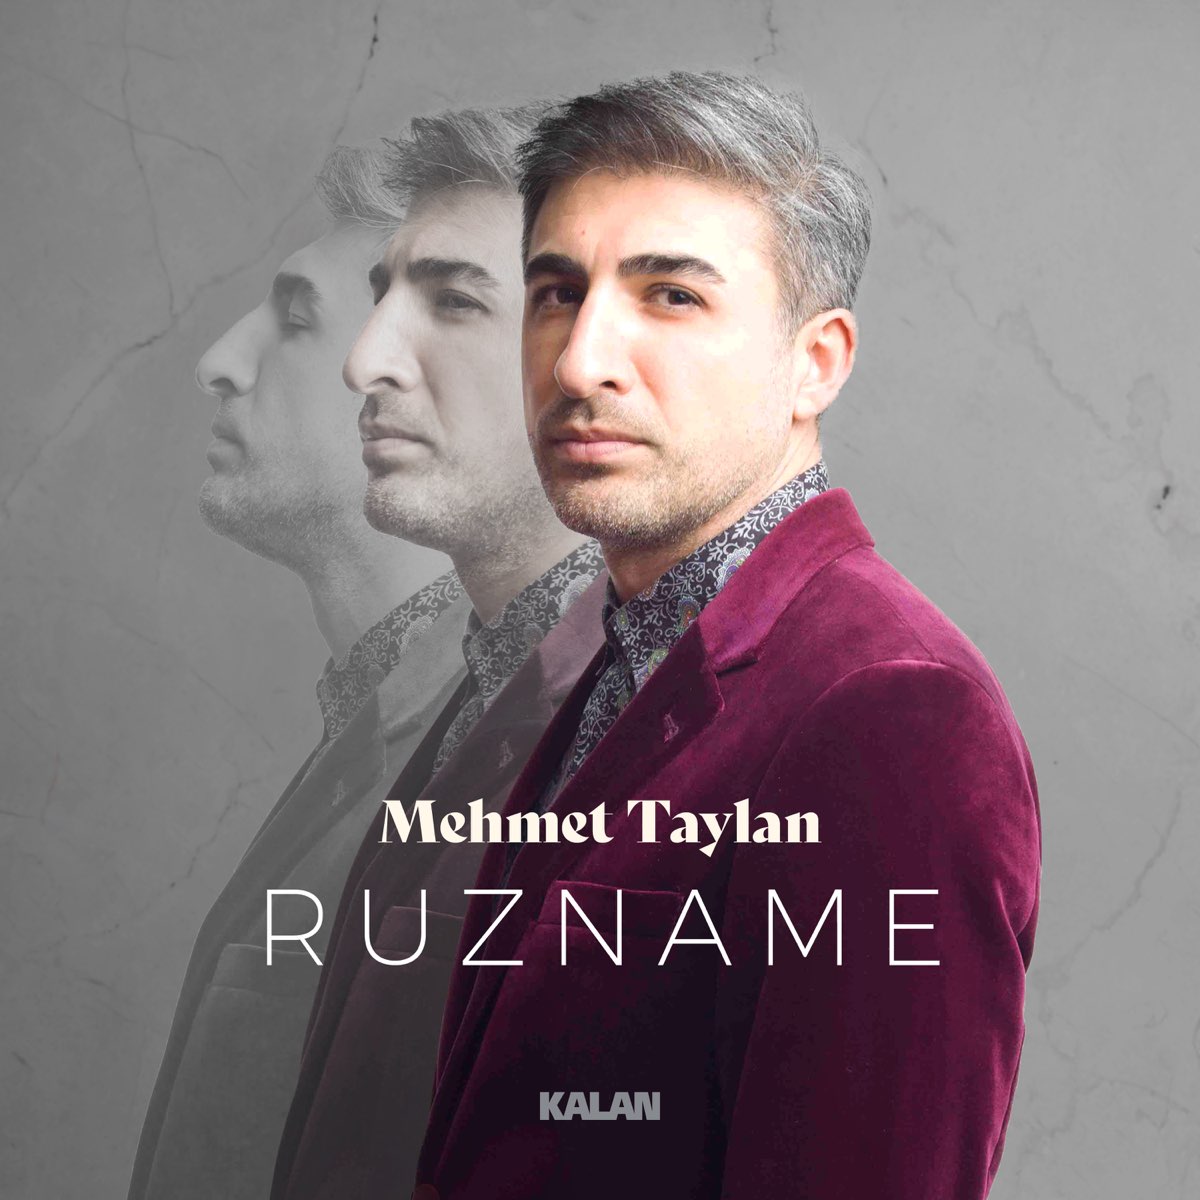 Mehmet Taylan Ruzname